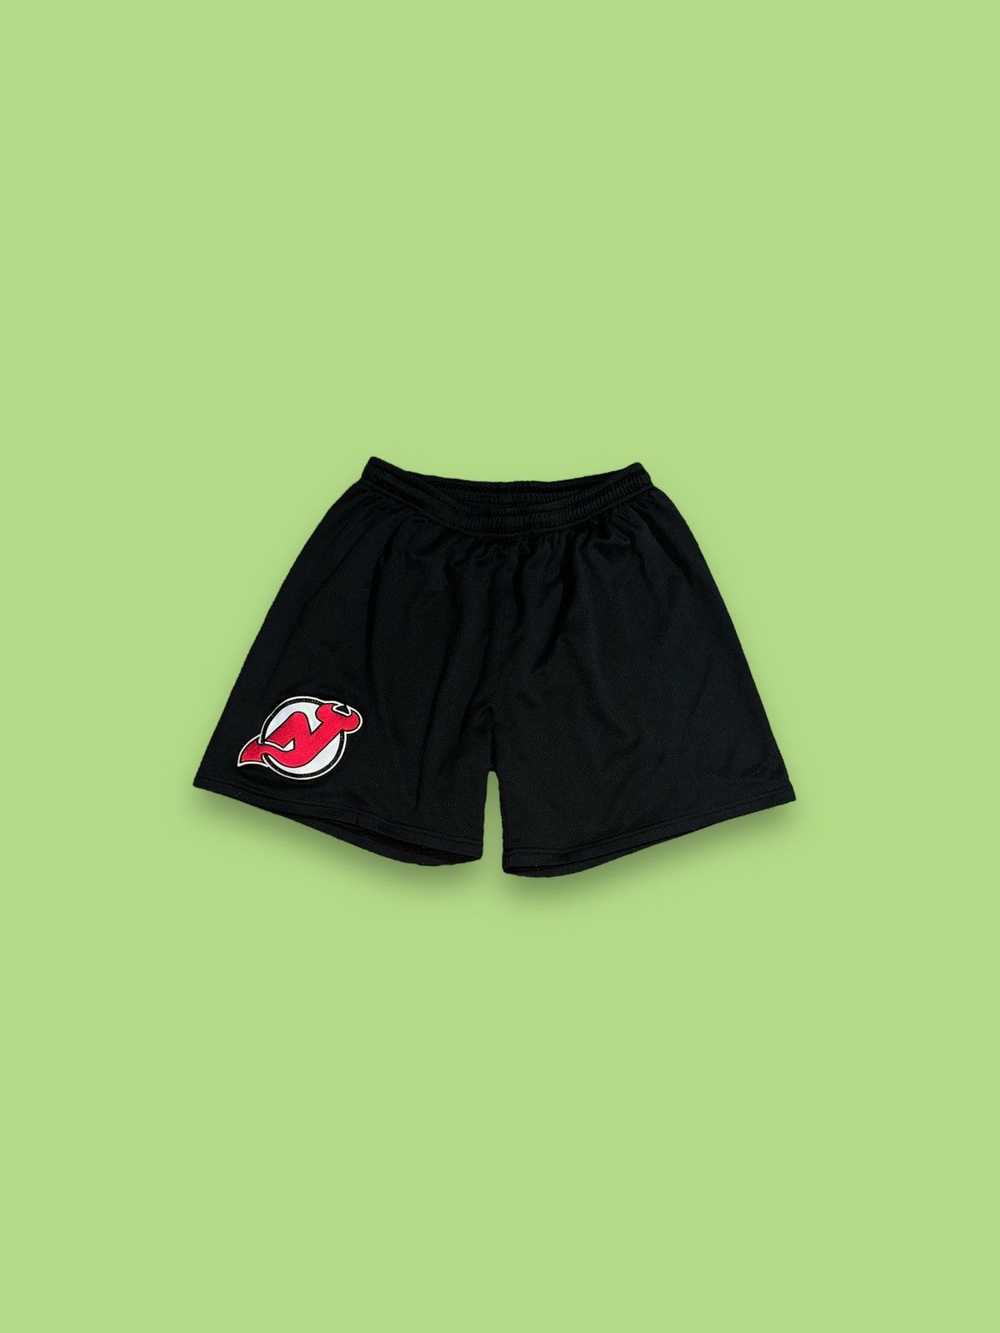 Ccm × NHL New Jersey devils hockey shorts - image 1